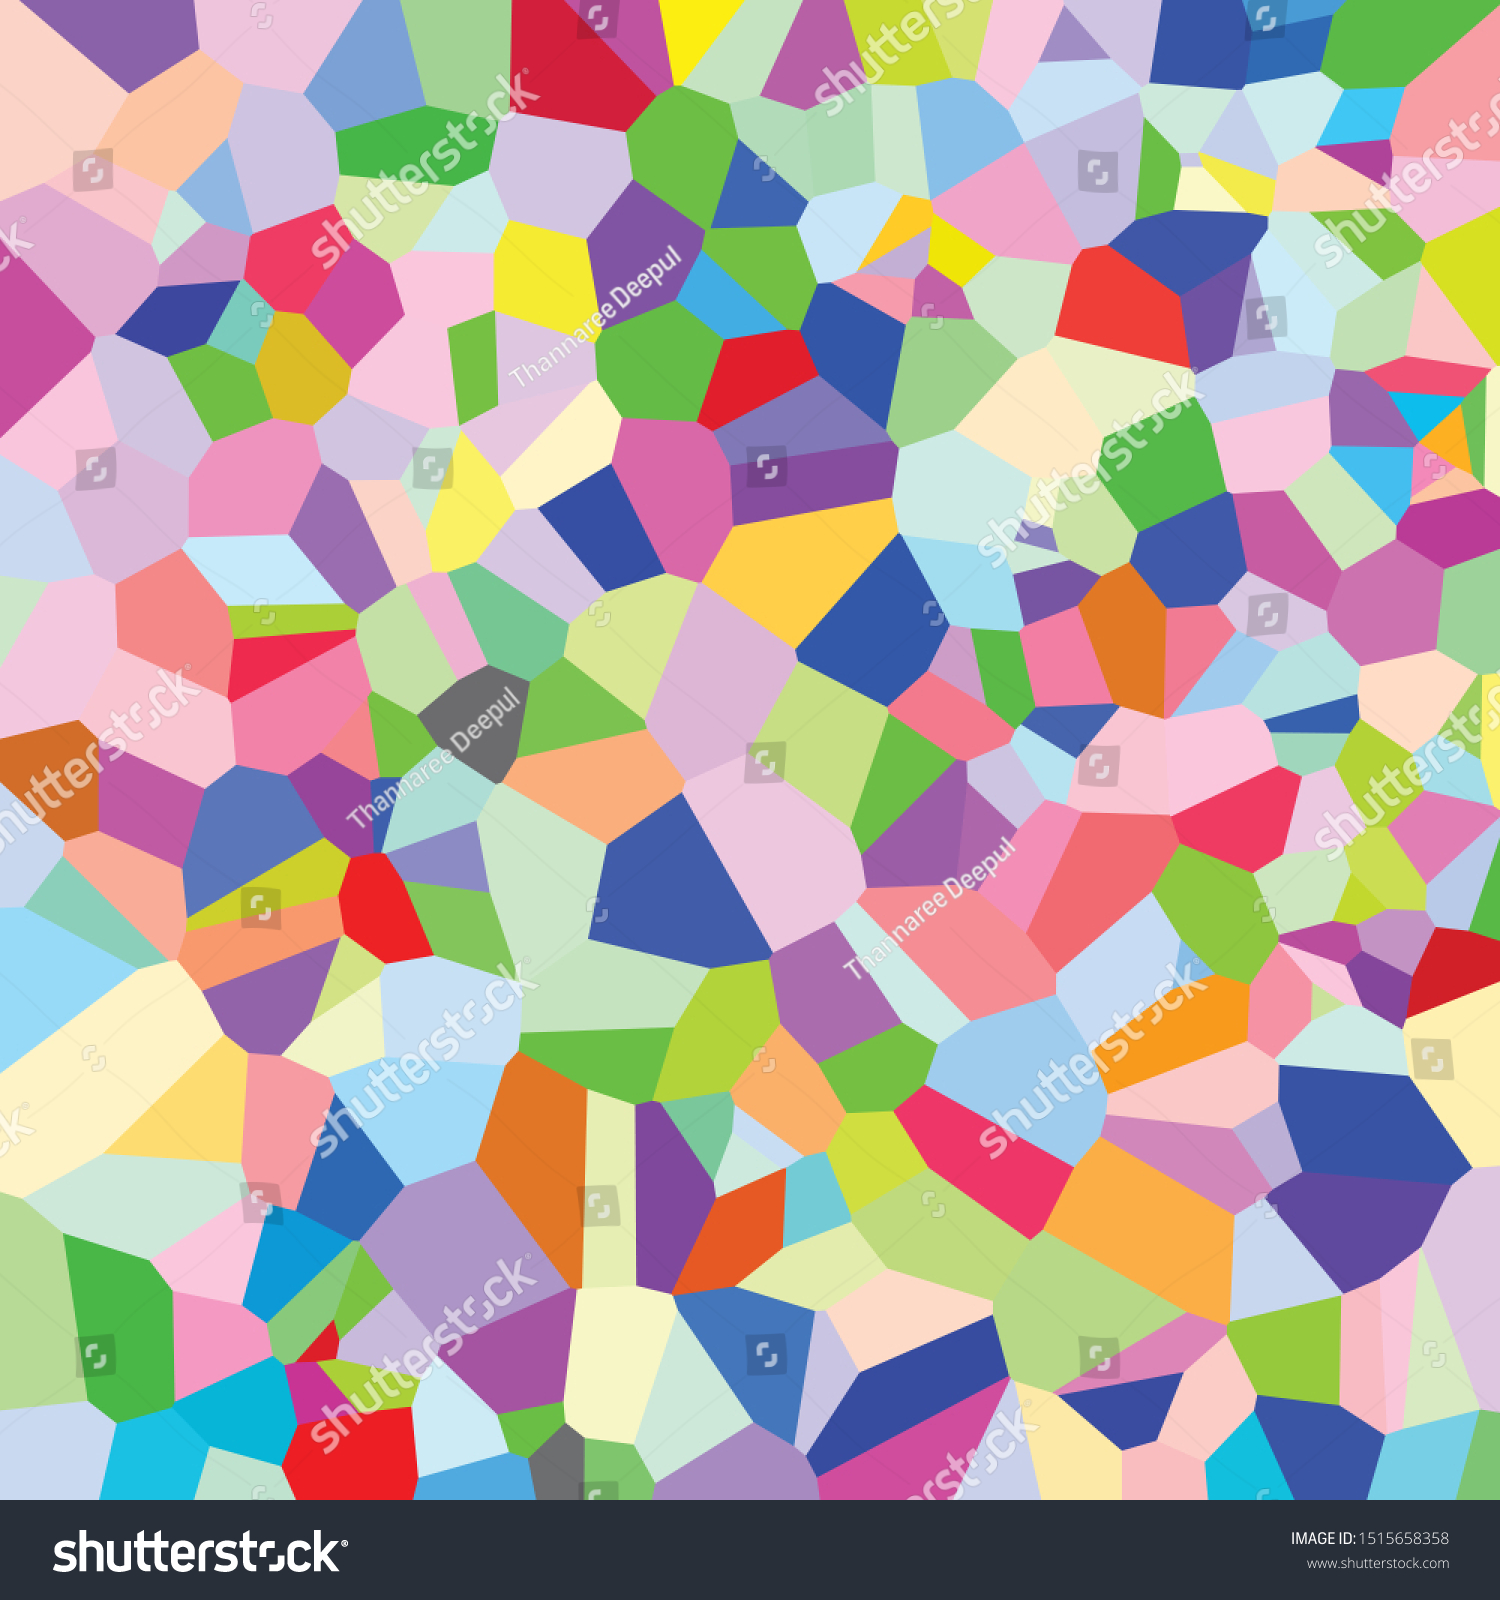 Diagramas de Voronoi: sitios, vértices, aristas y celdas